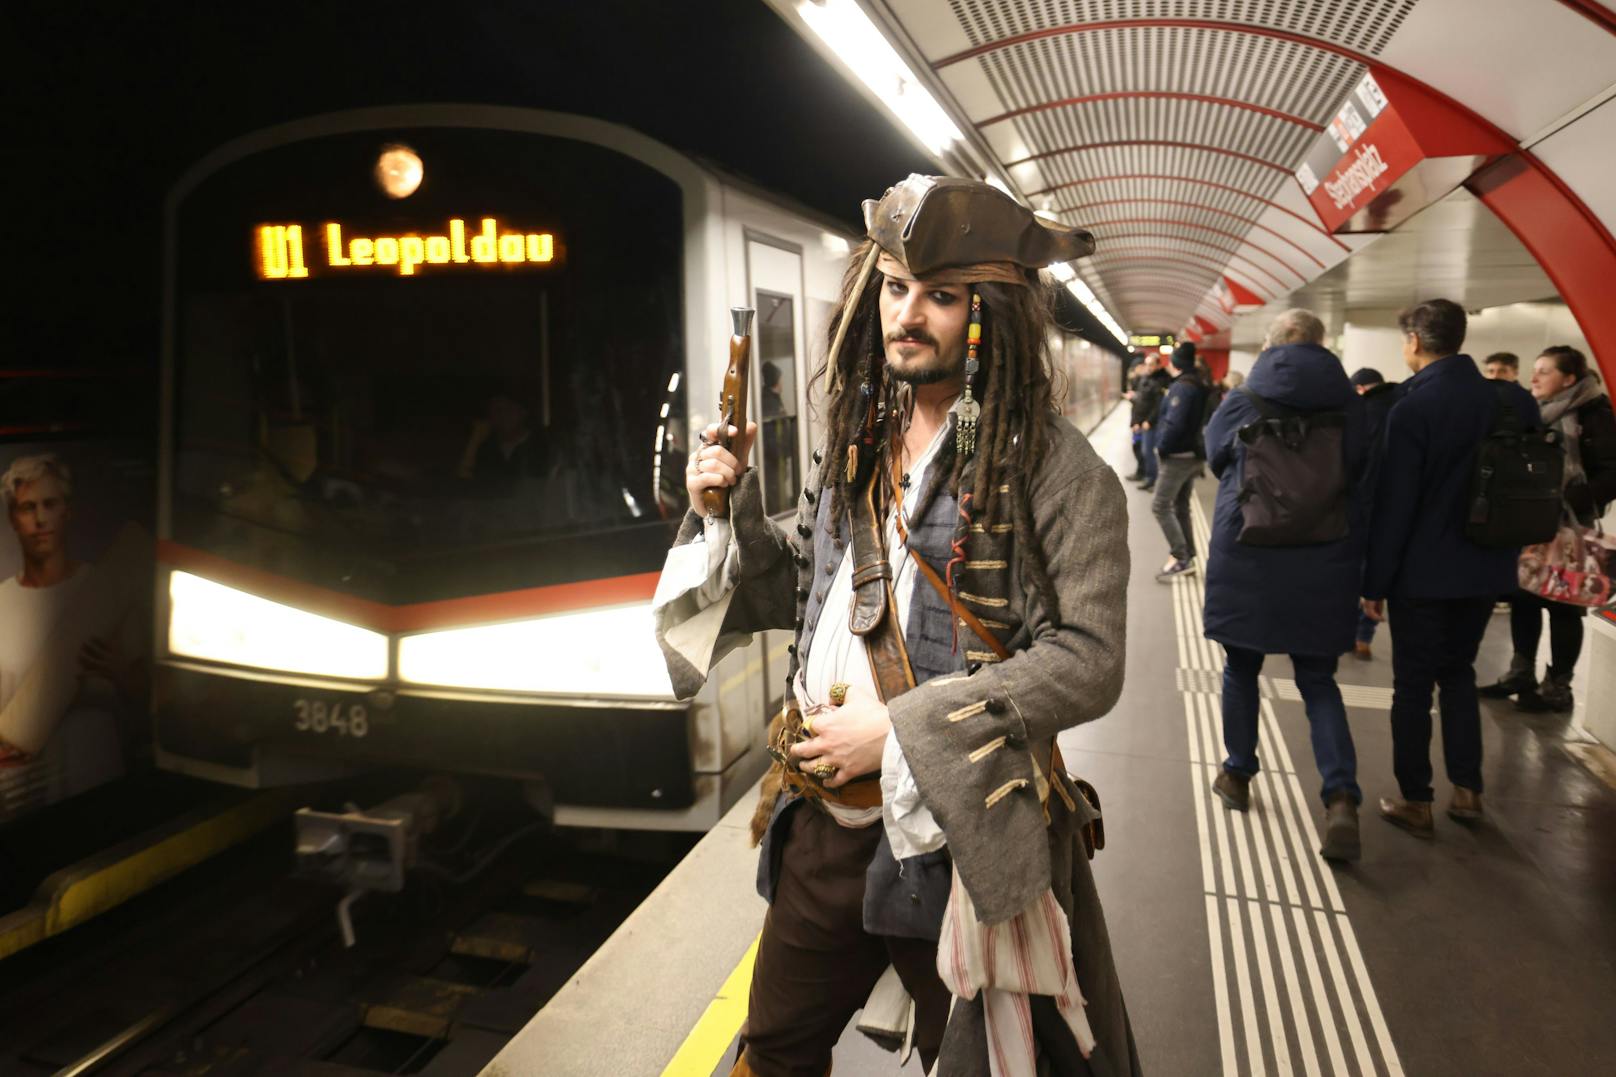 Der Pirat war mit einer Pistole bewaffnet, enterte die einfahrende U-Bahngarnitur.